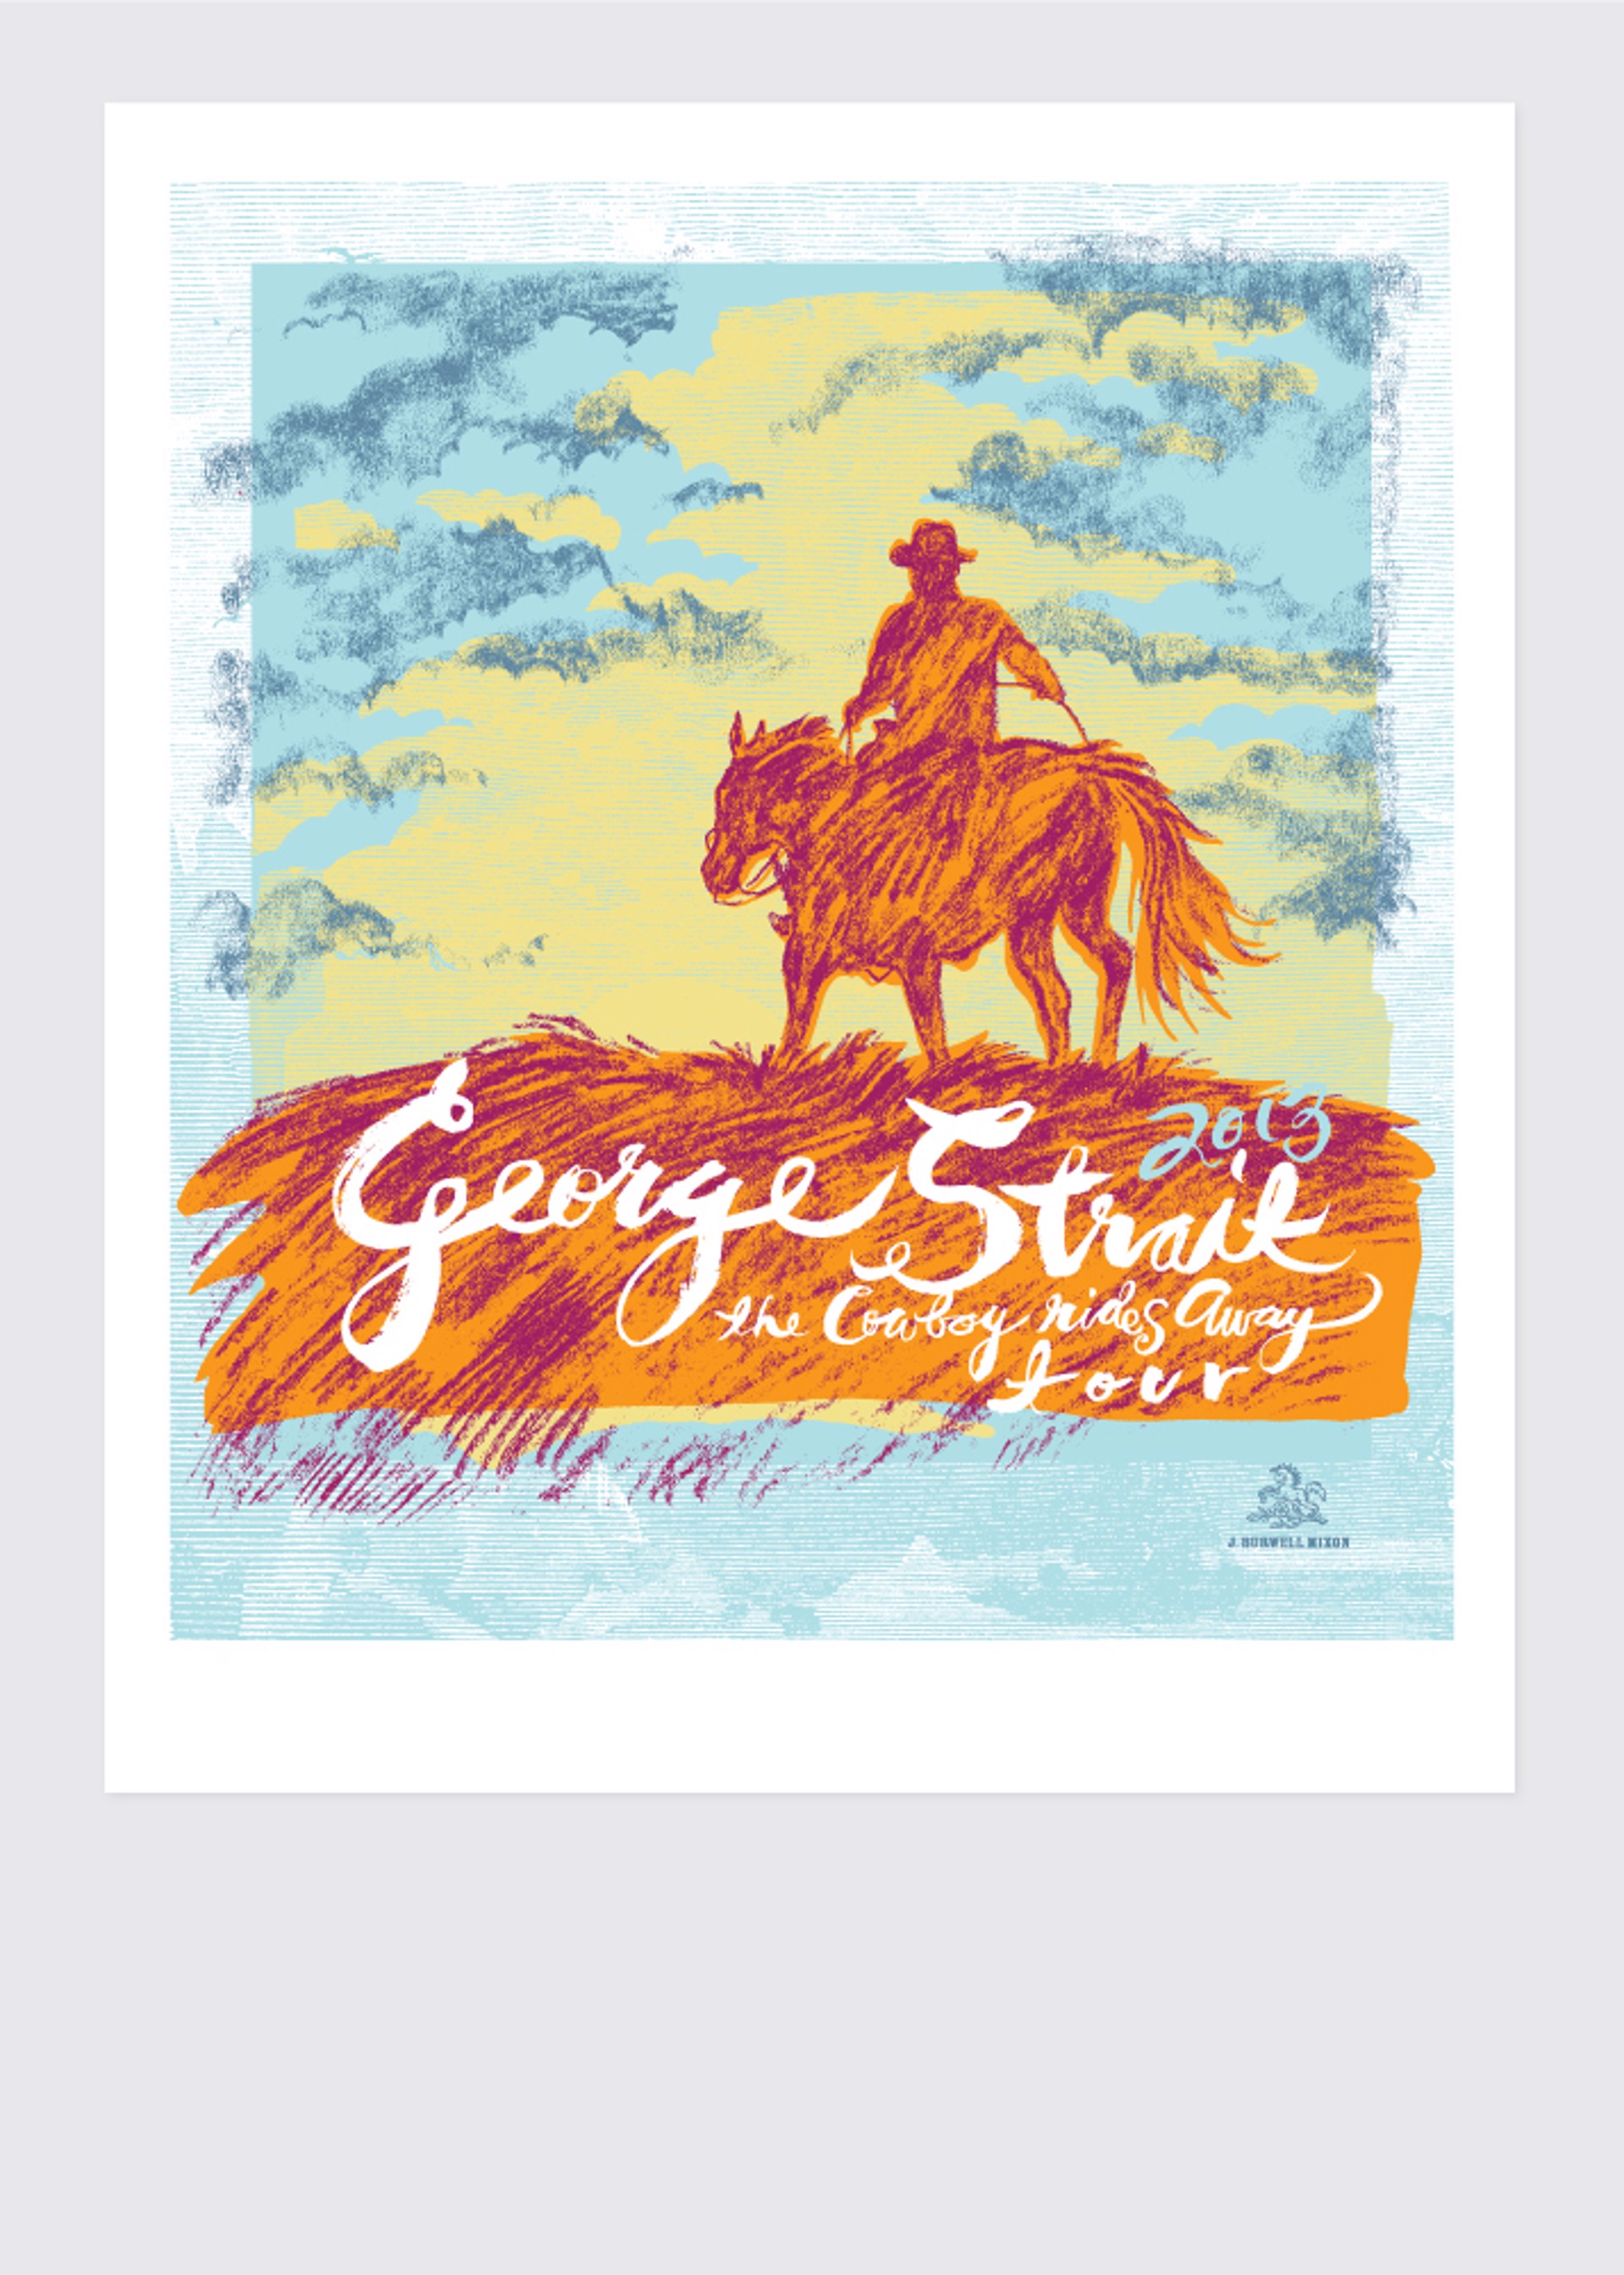 George Strait Concert Poster by Jamie Burwell Mixon